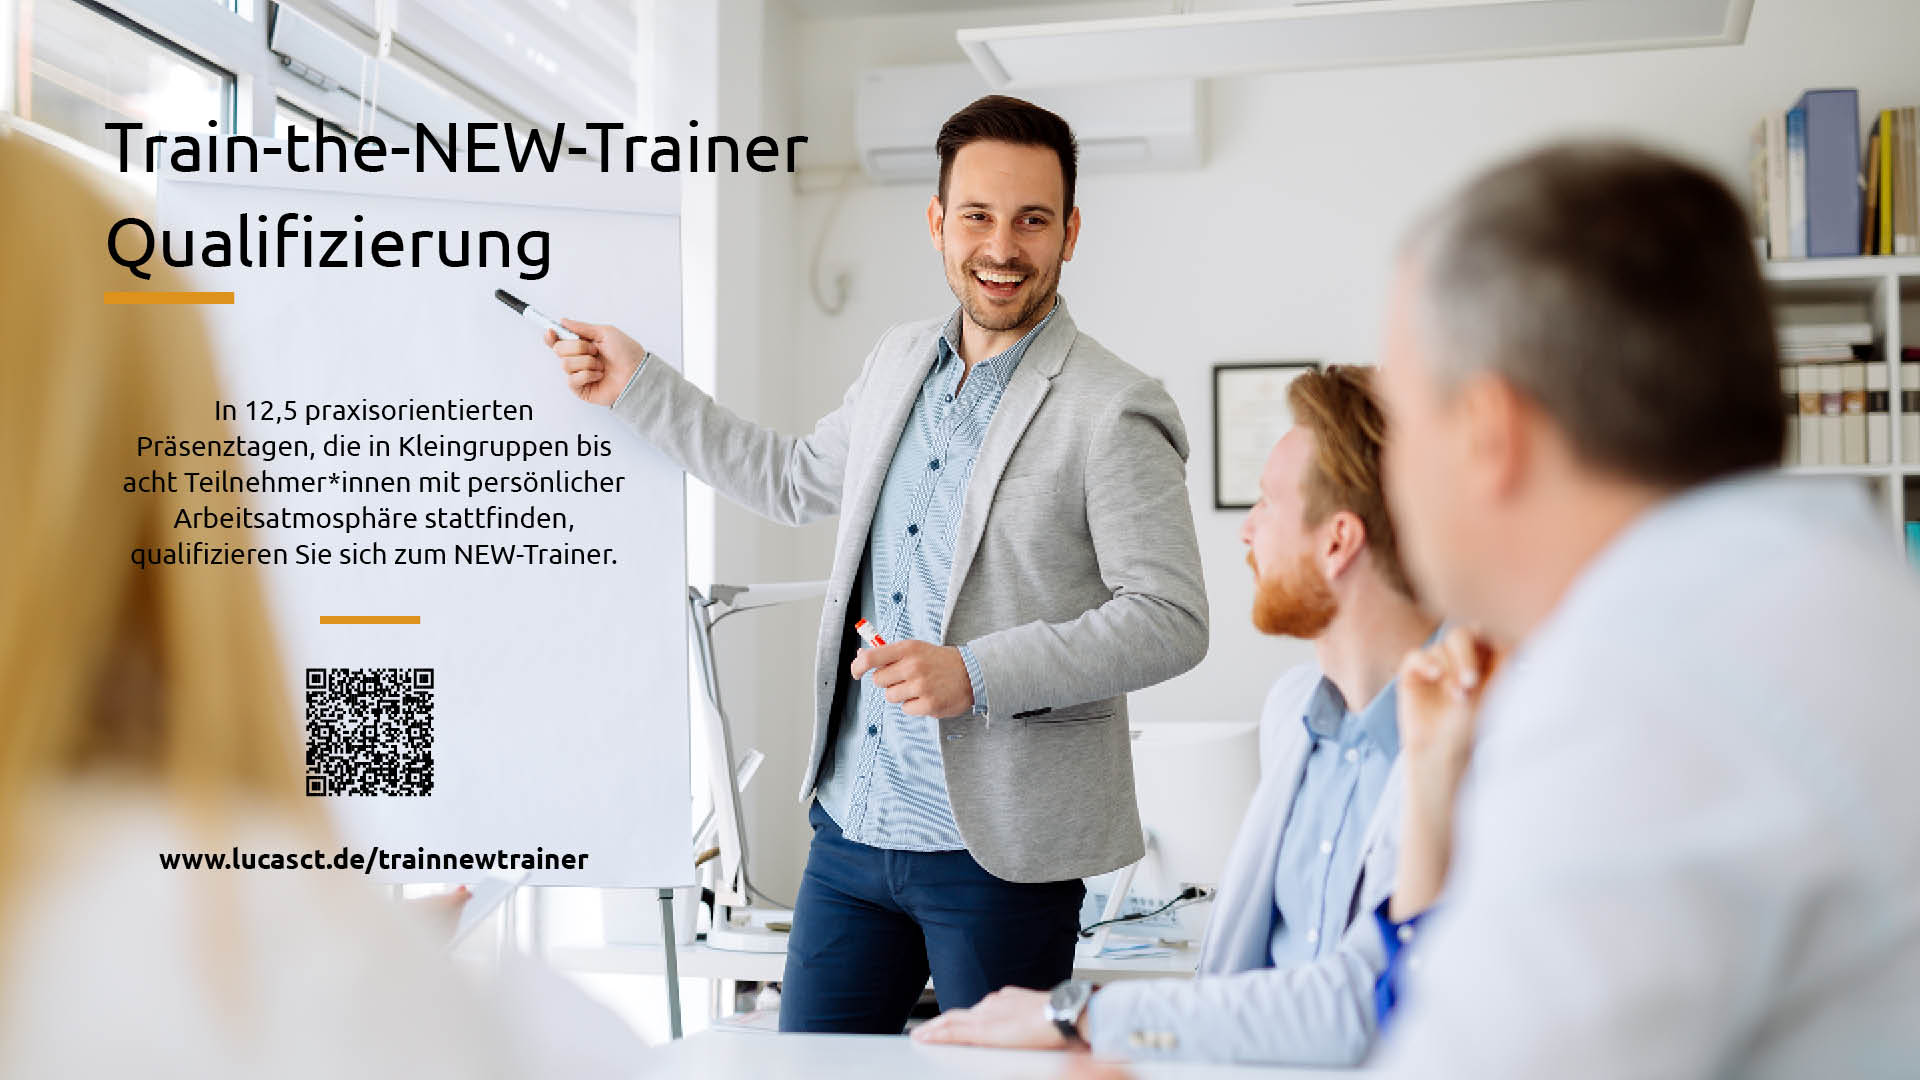 Train-the-new-Trainer-Qualifizierung-Breitbild